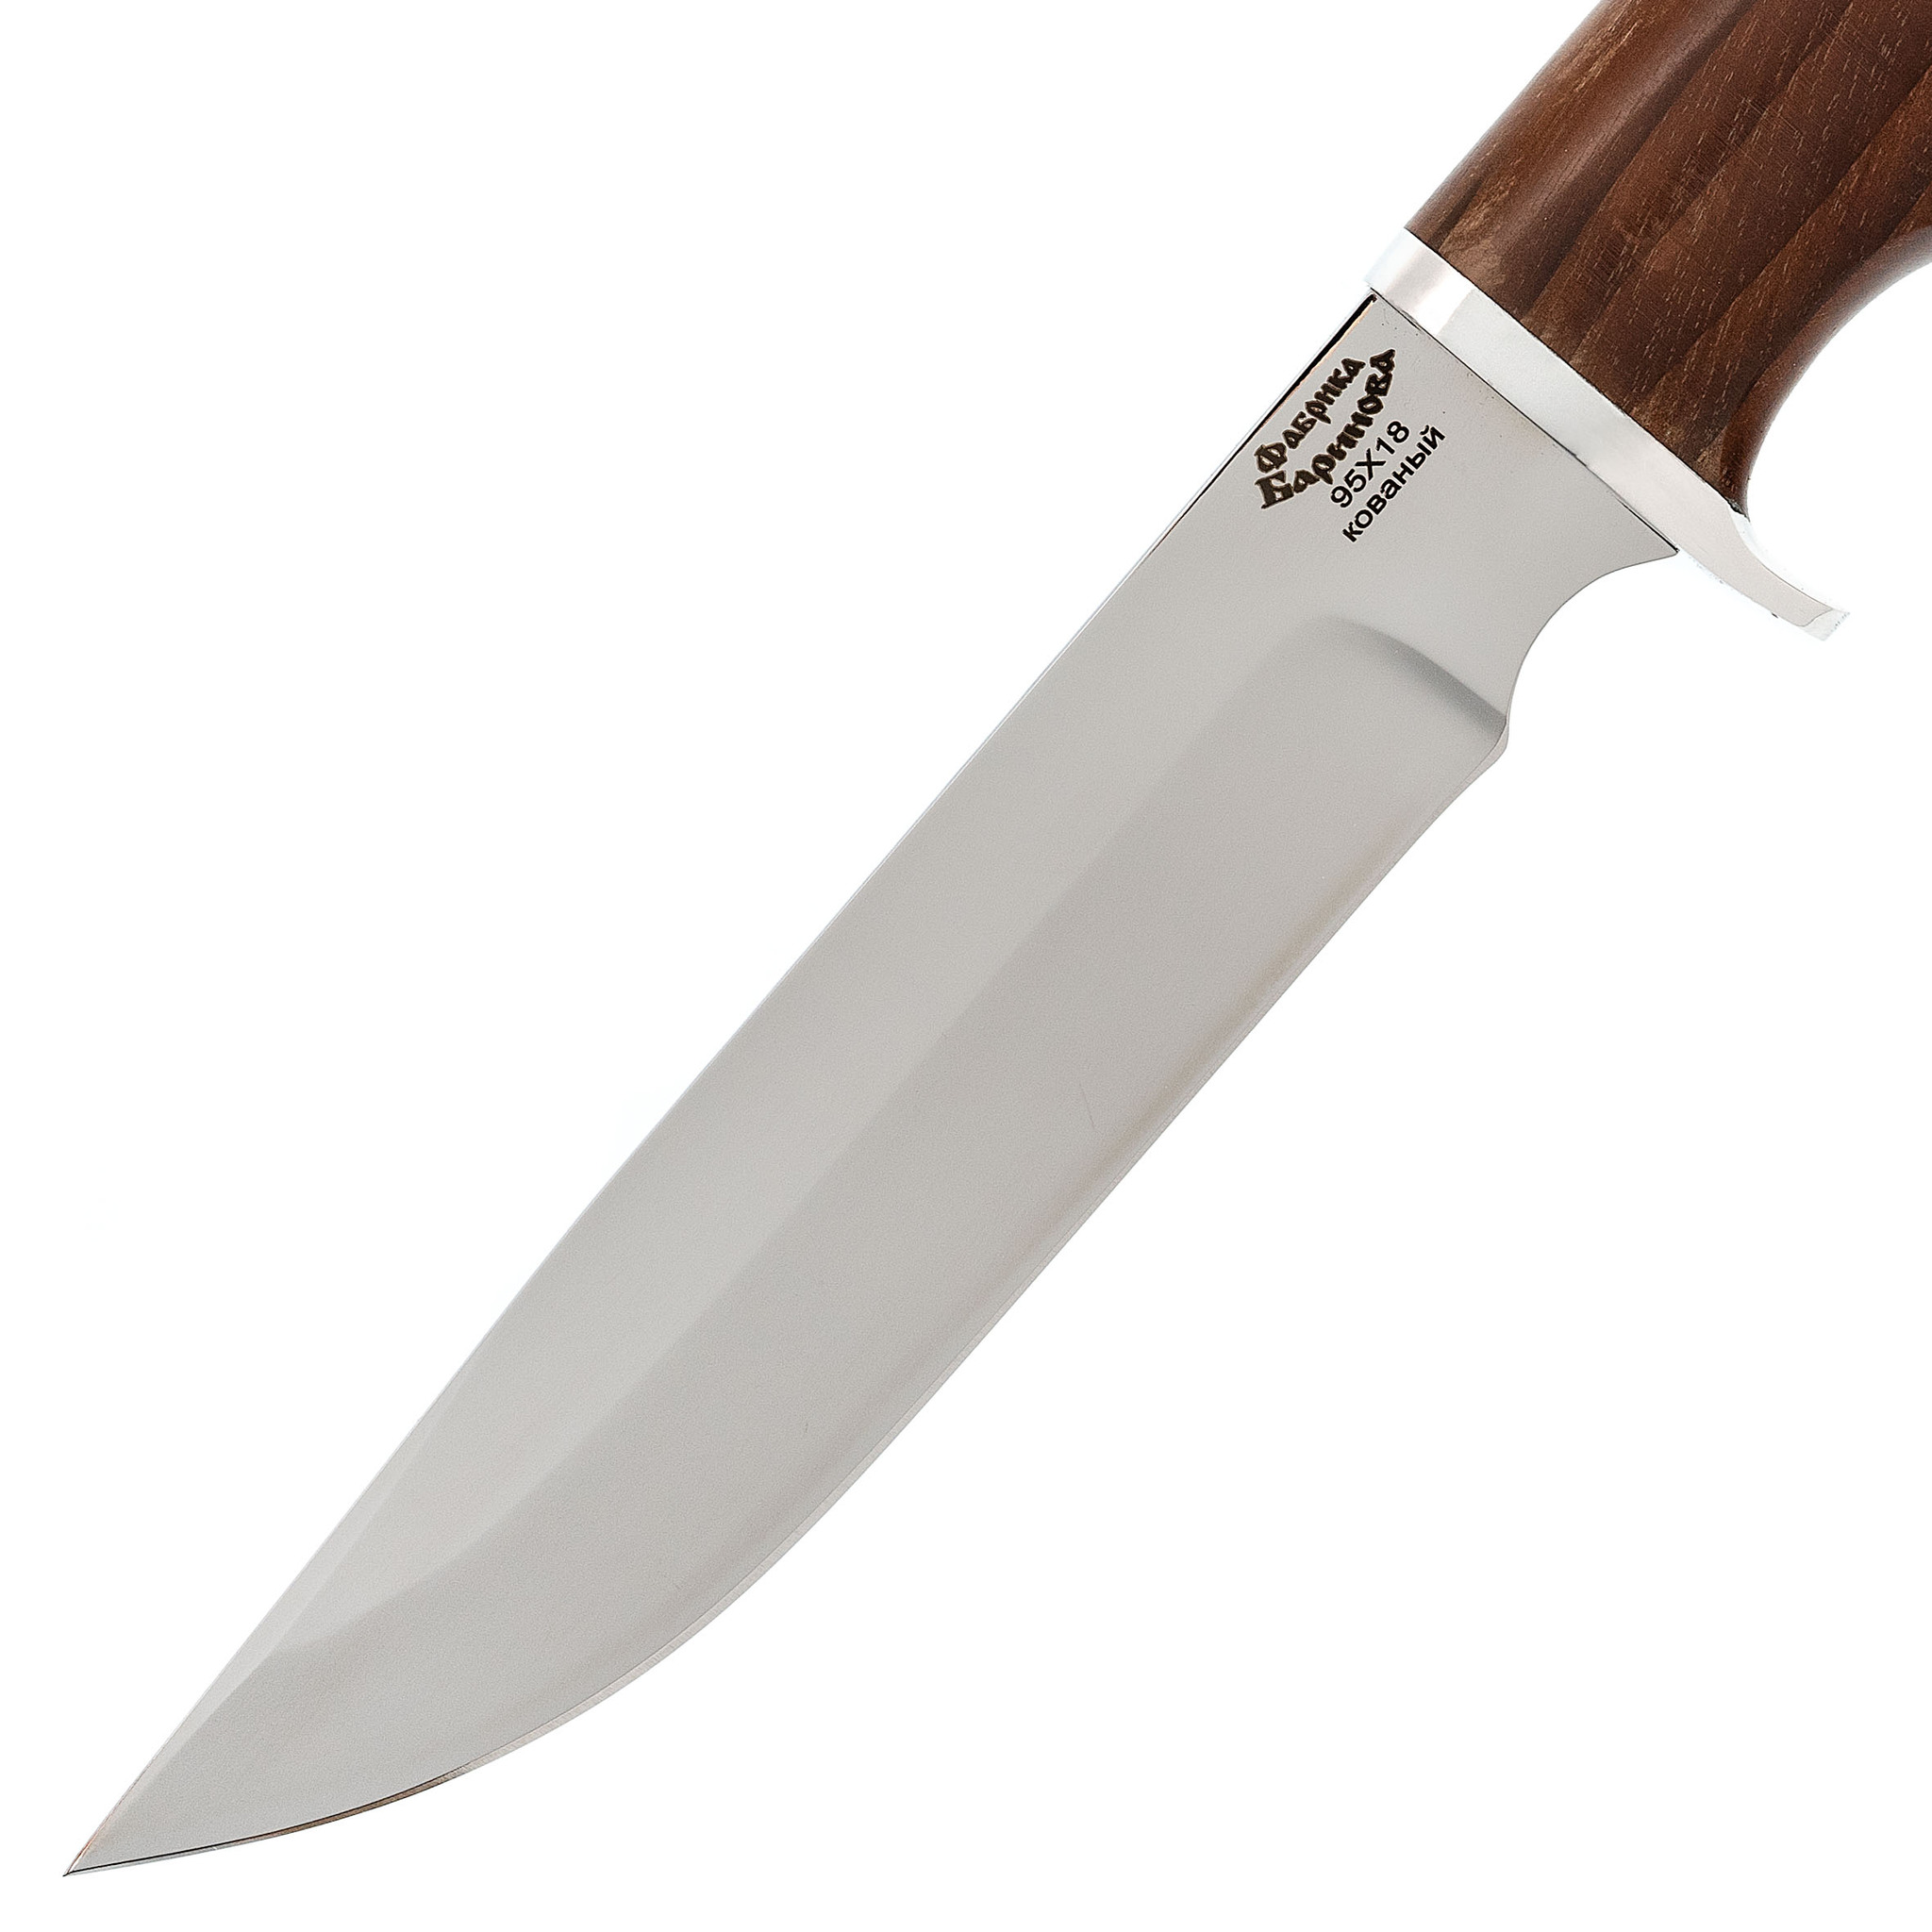  Осетр 95Х18, бук -  нож с деревянной ручкой от Кизляр 